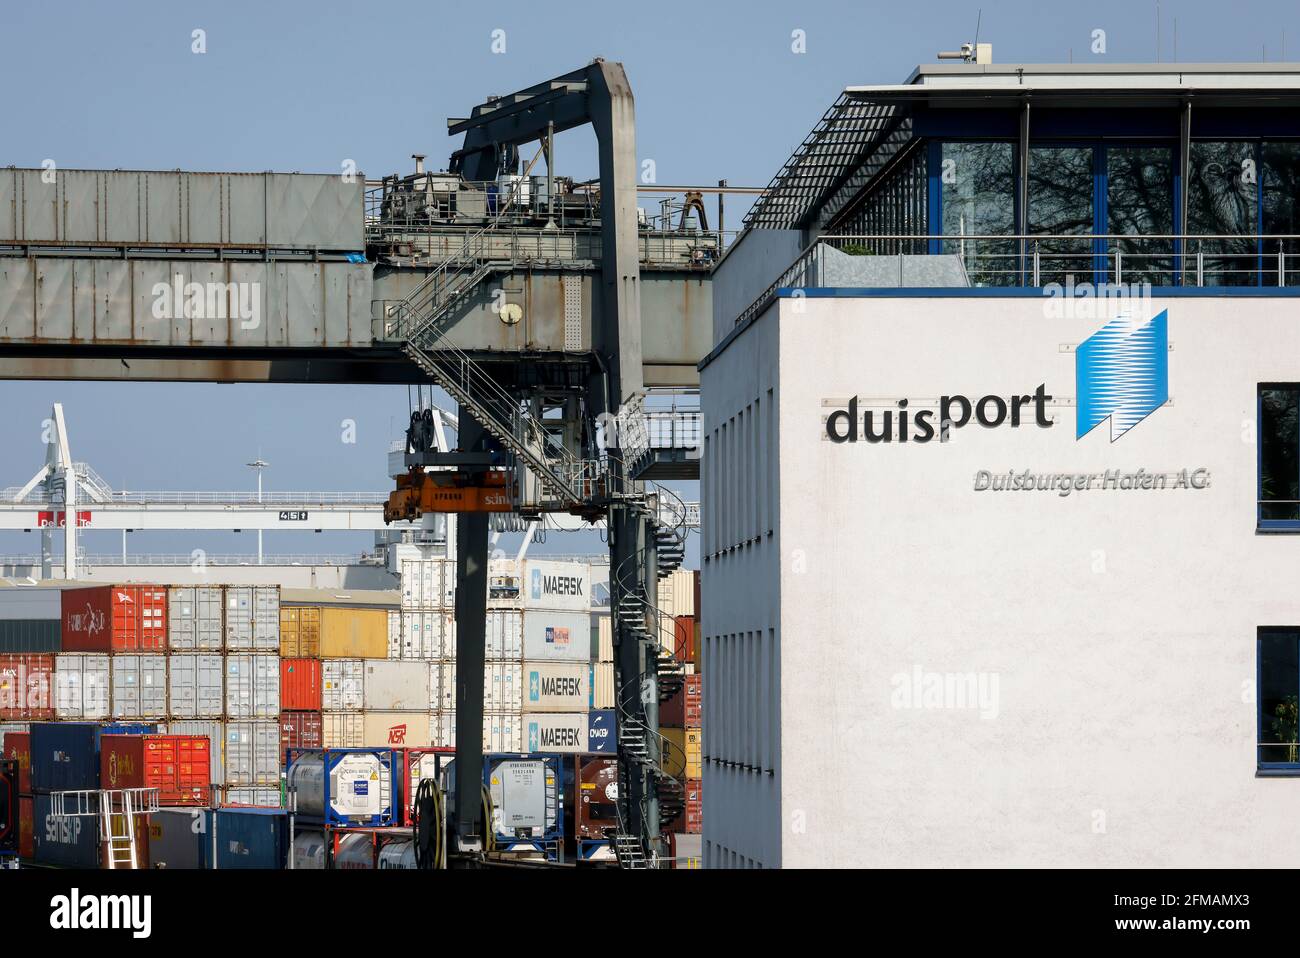 Duisburg, région de la Ruhr, Rhénanie-du-Nord-Westphalie, Allemagne - Duisburger Hafen AG, Duisport, siège de la société au terminal des conteneurs dans le district de Duisburg Ruhrort. Banque D'Images